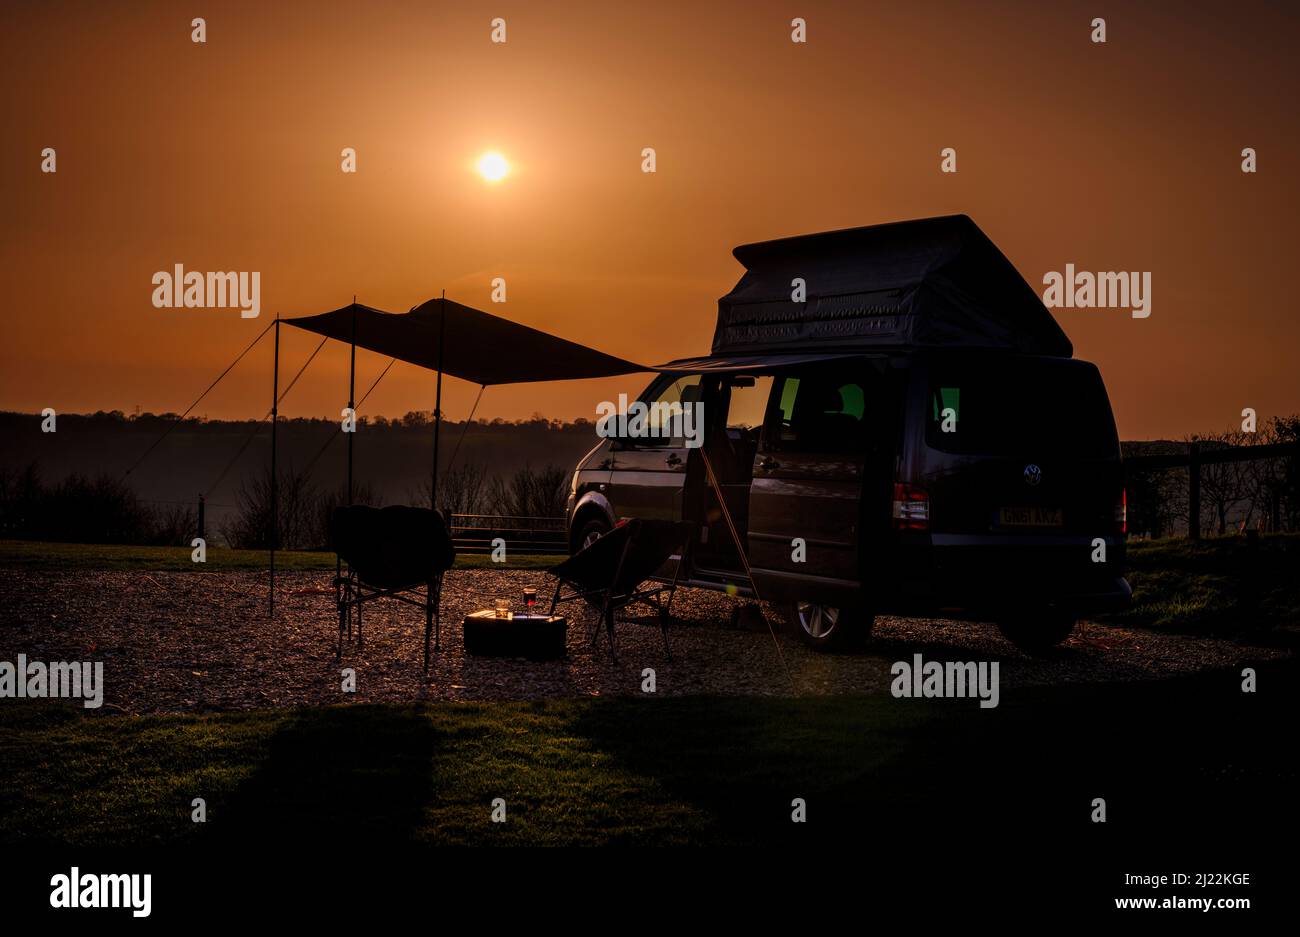 Sonnenuntergang auf den South Downs auf der Bow Hill Farm. UK Camping Vanlife mit einem VW T5 Wohnmobil und Markise. Stockfoto